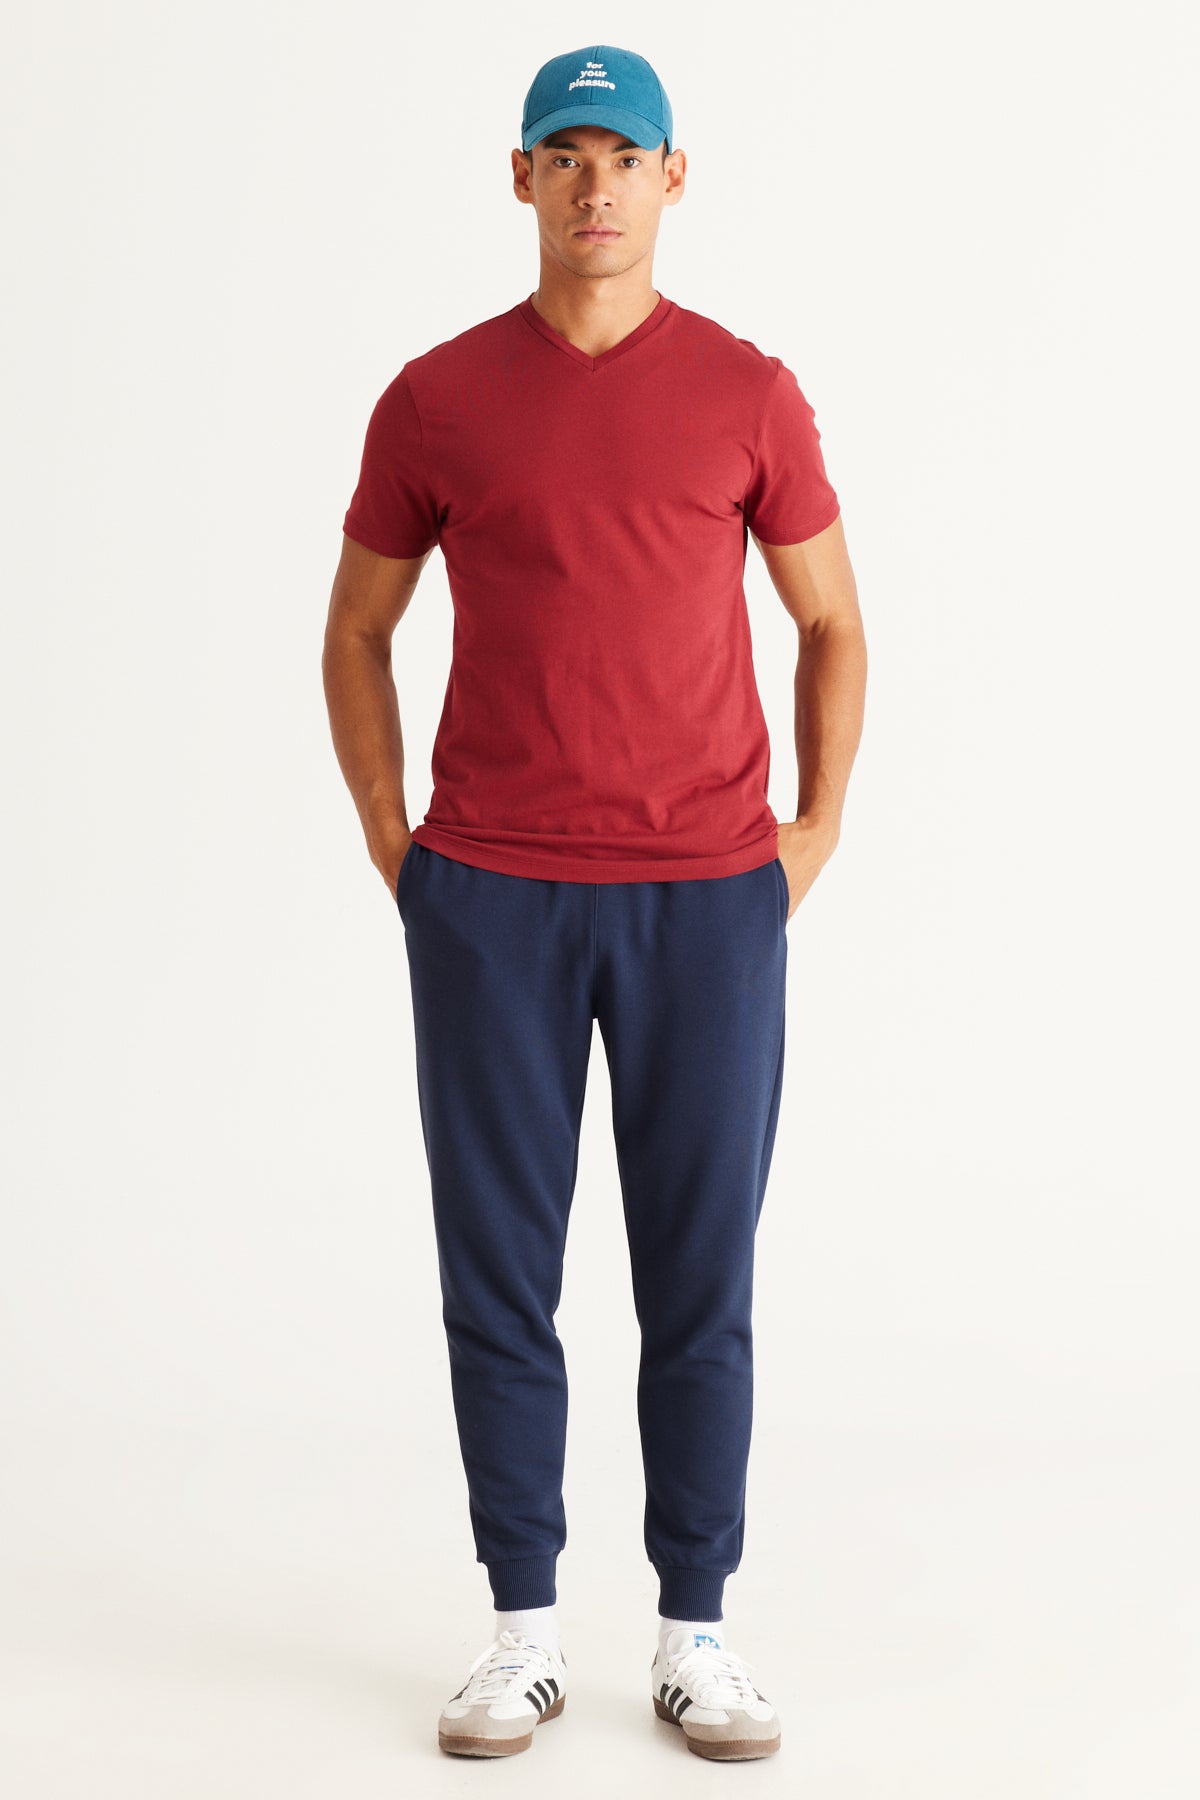 Men's Claret Red Slim Fit Slim Fit V-Neck Cotton V-Neck Short Sleeved T-Shirt